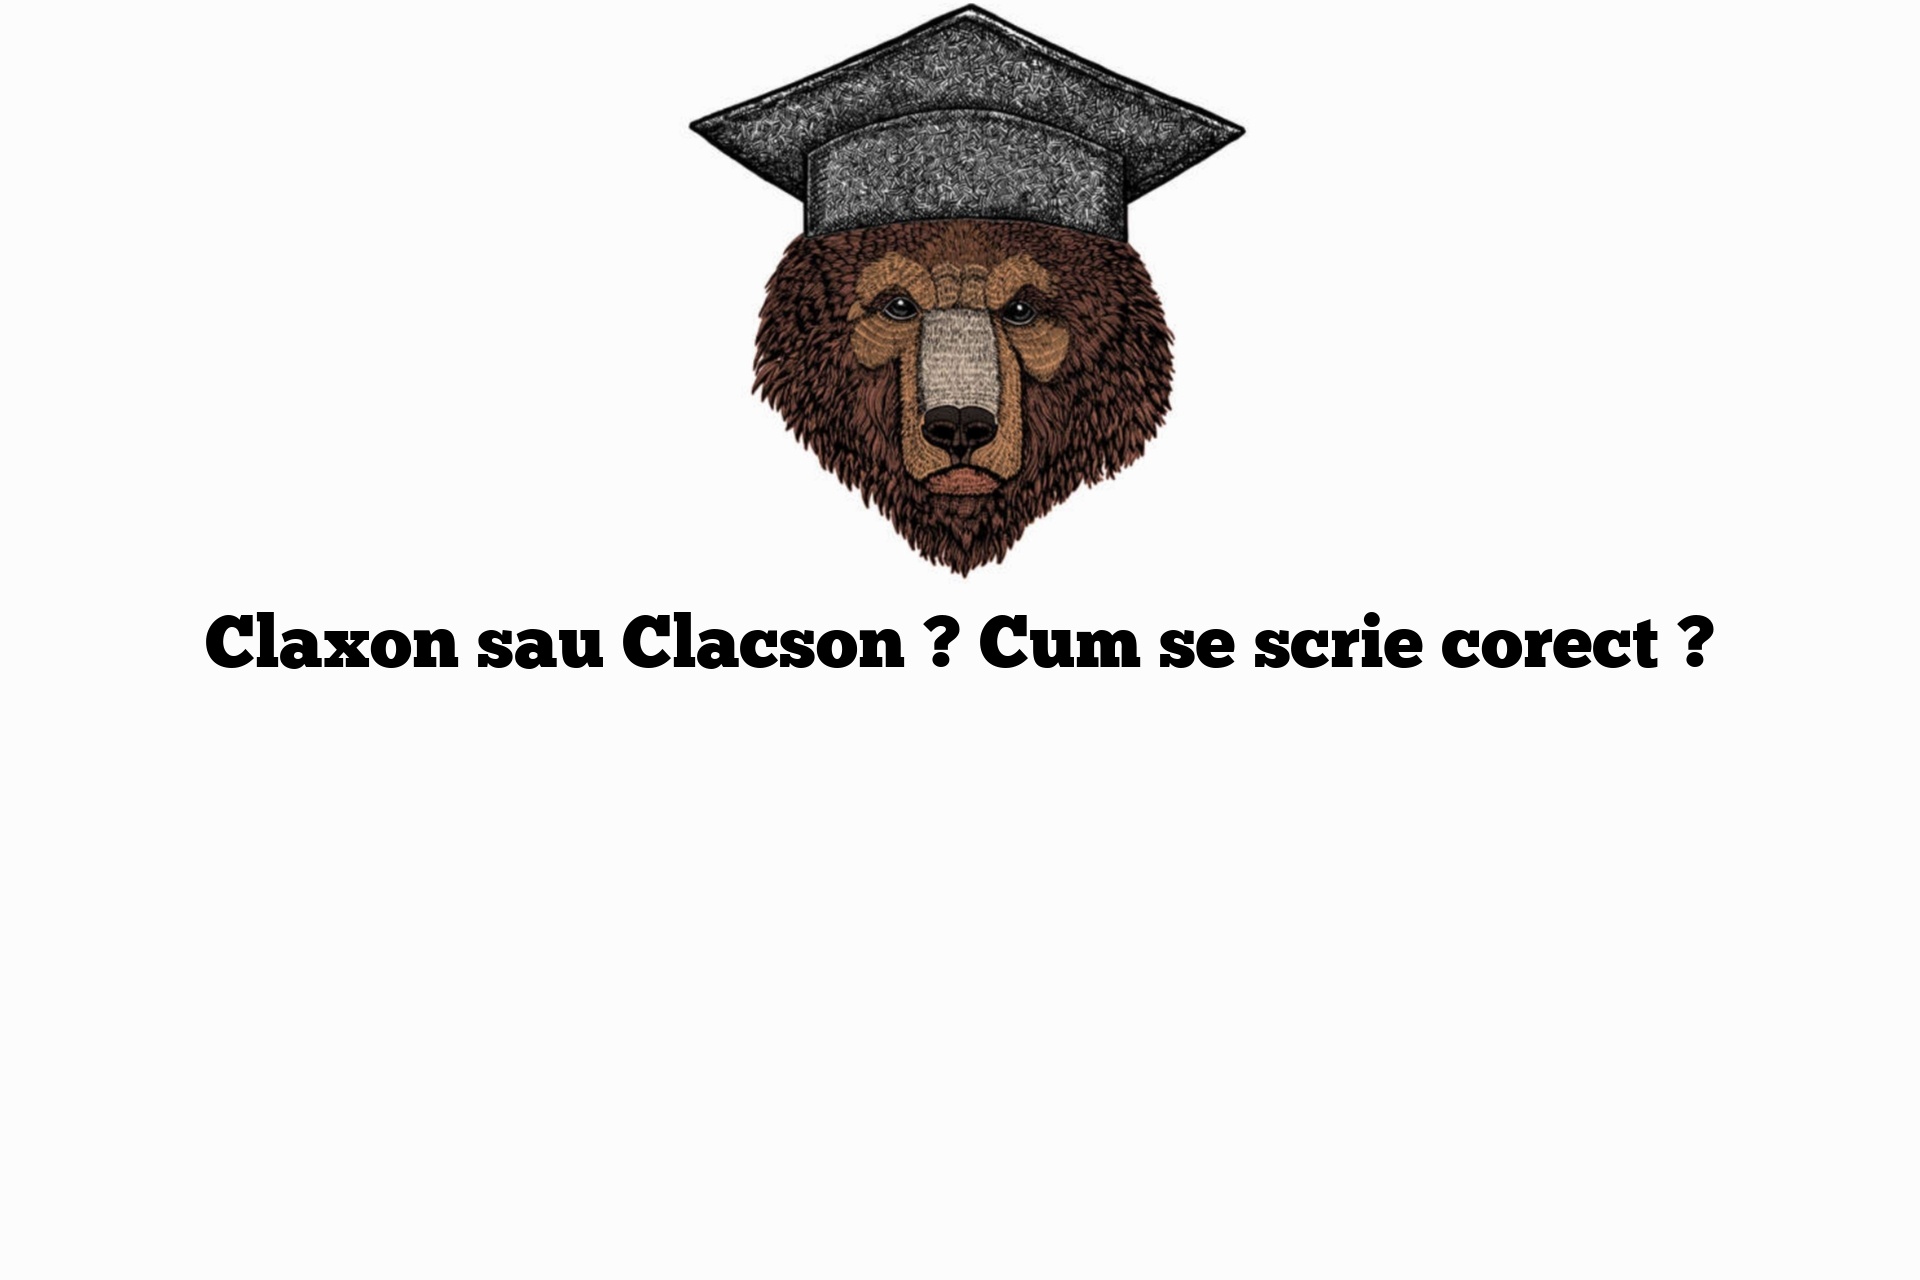 Claxon sau Clacson ? Cum se scrie corect ?